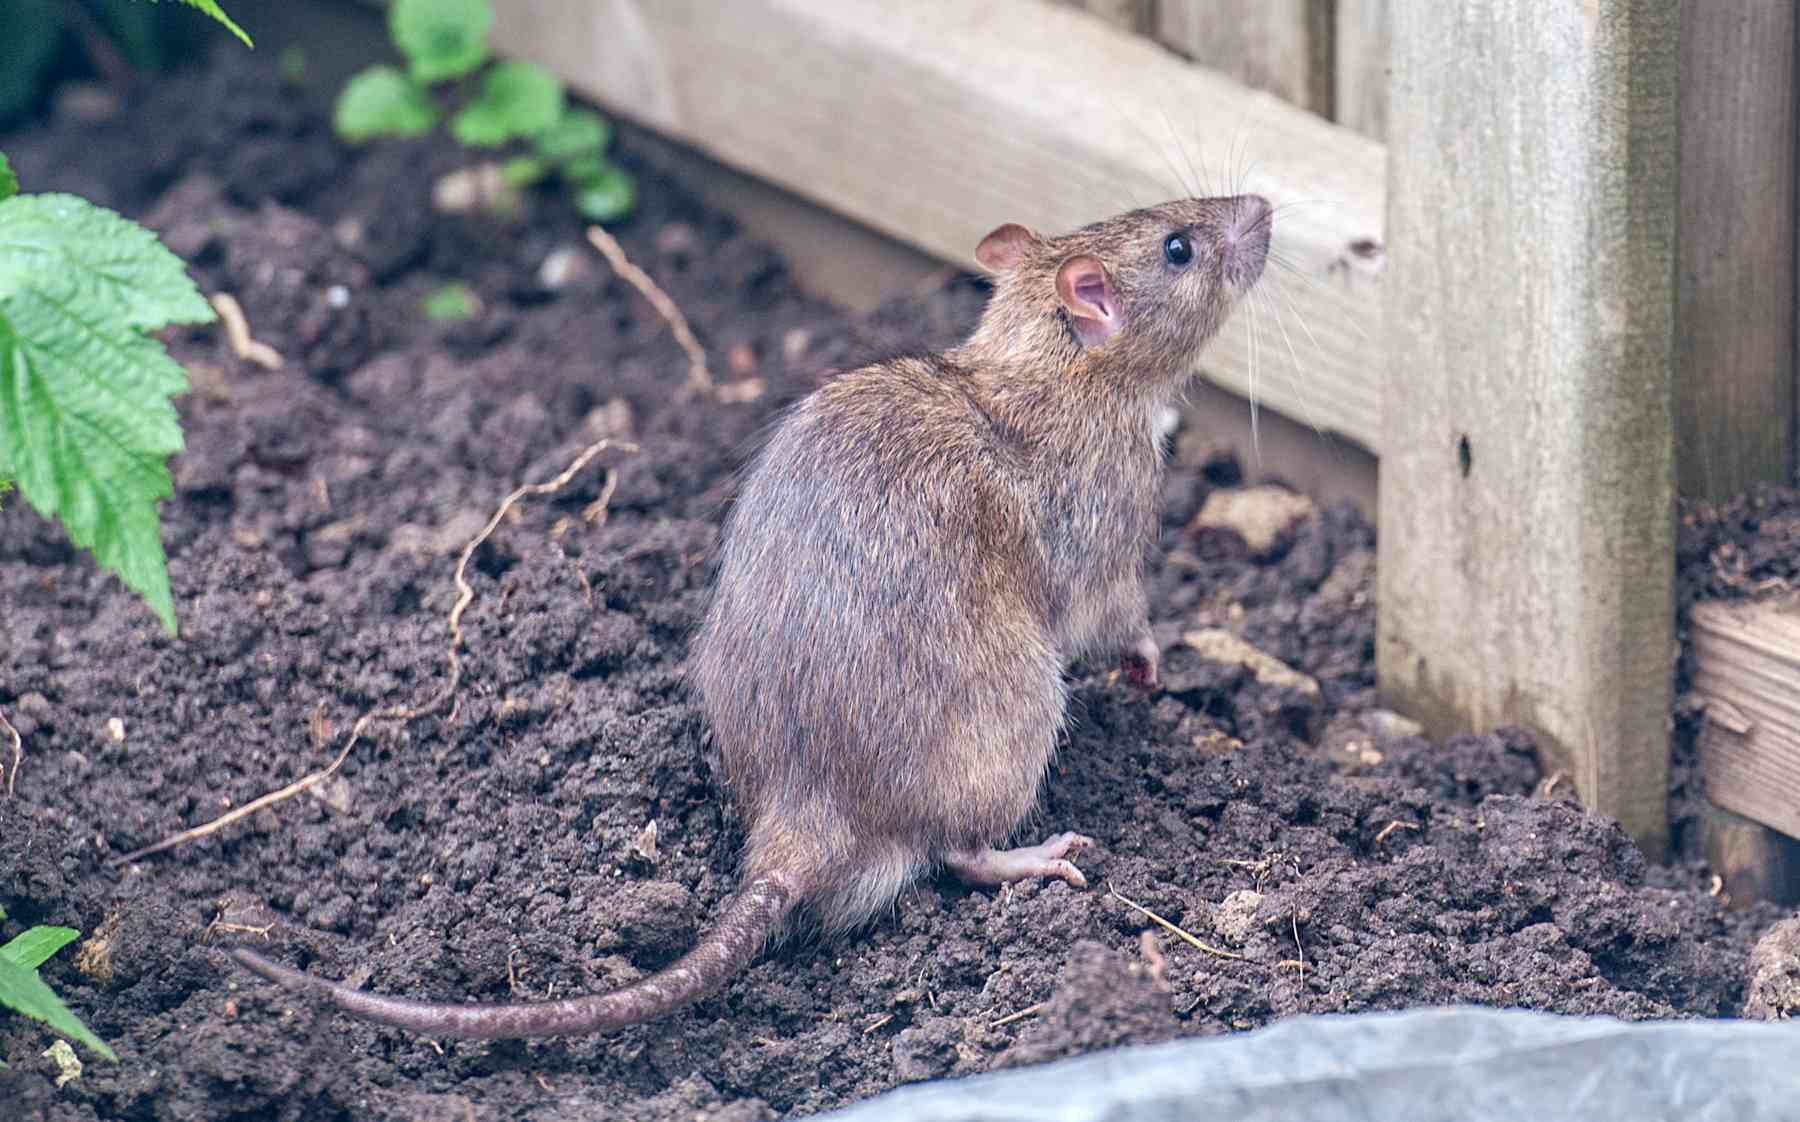 احترس من الفئران الموجودة في الحديقة